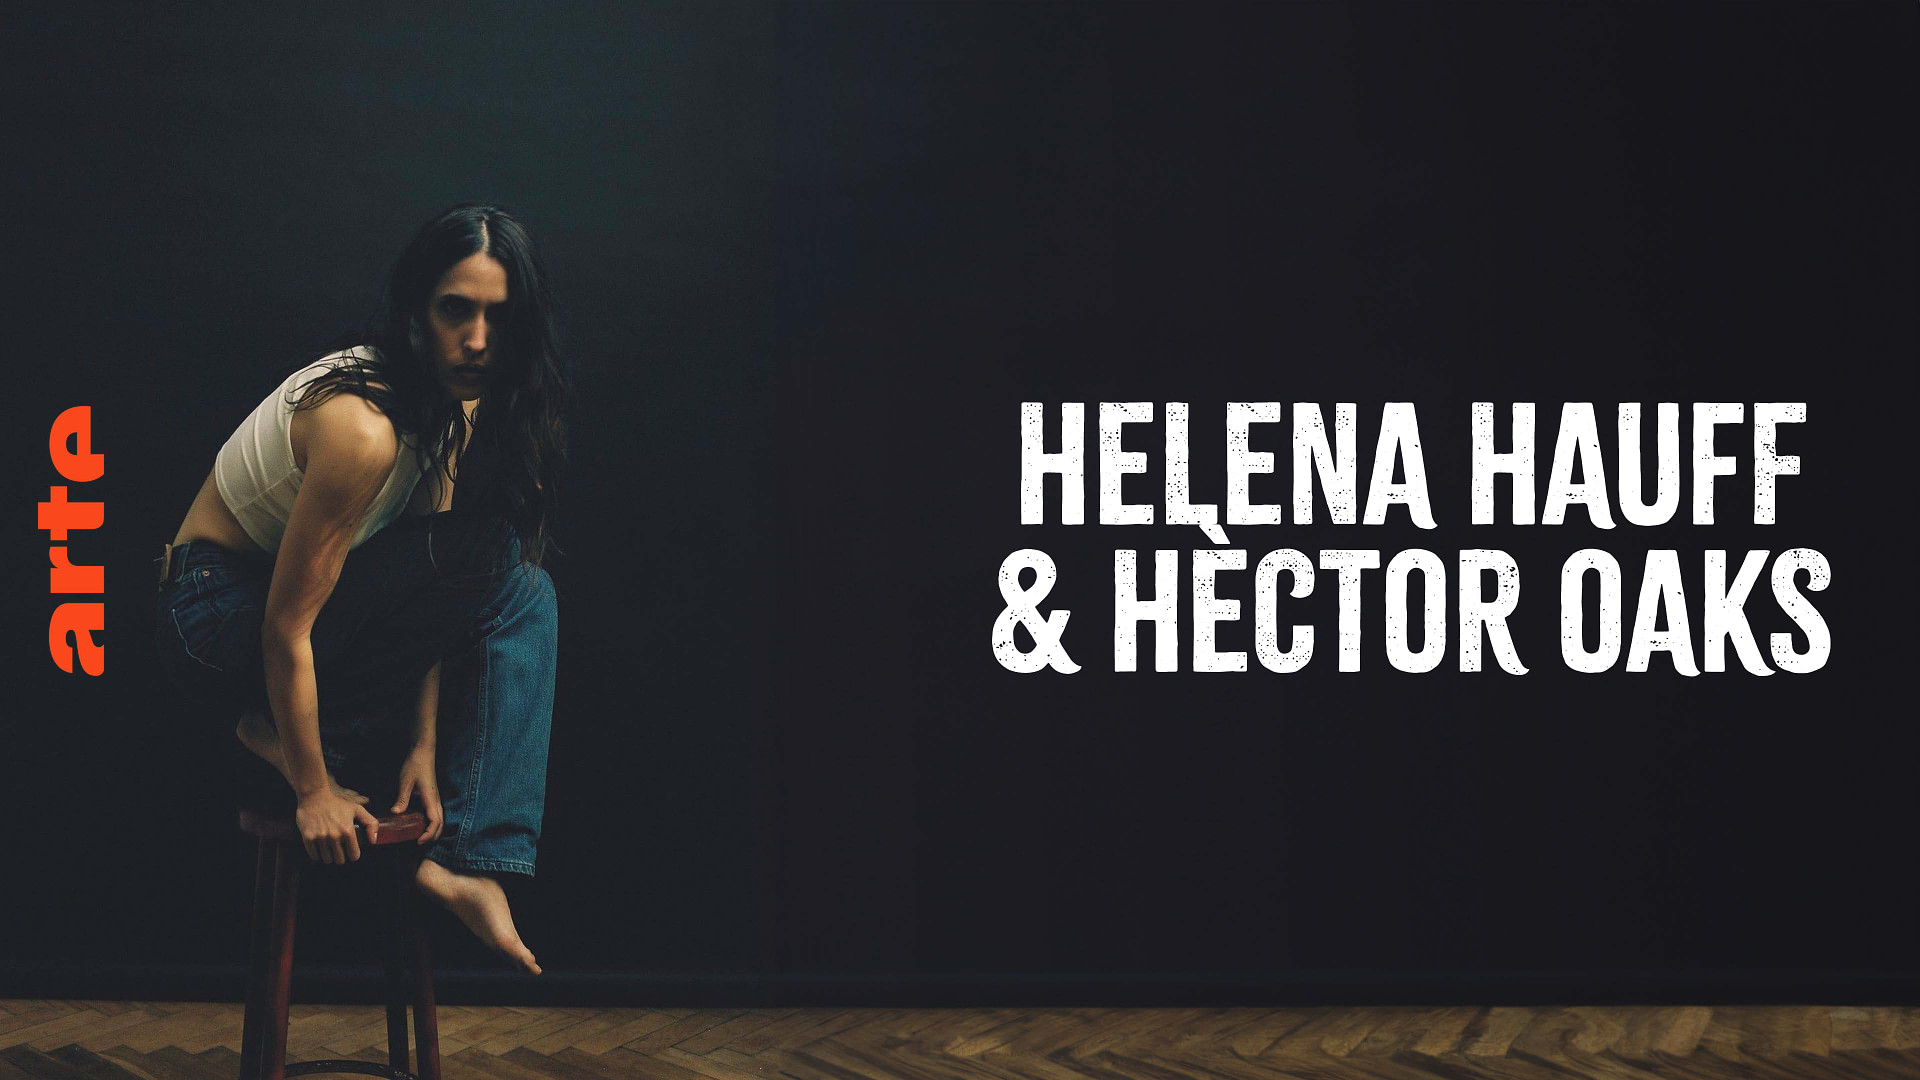 Héctor Oaks B2B Helena Hauff